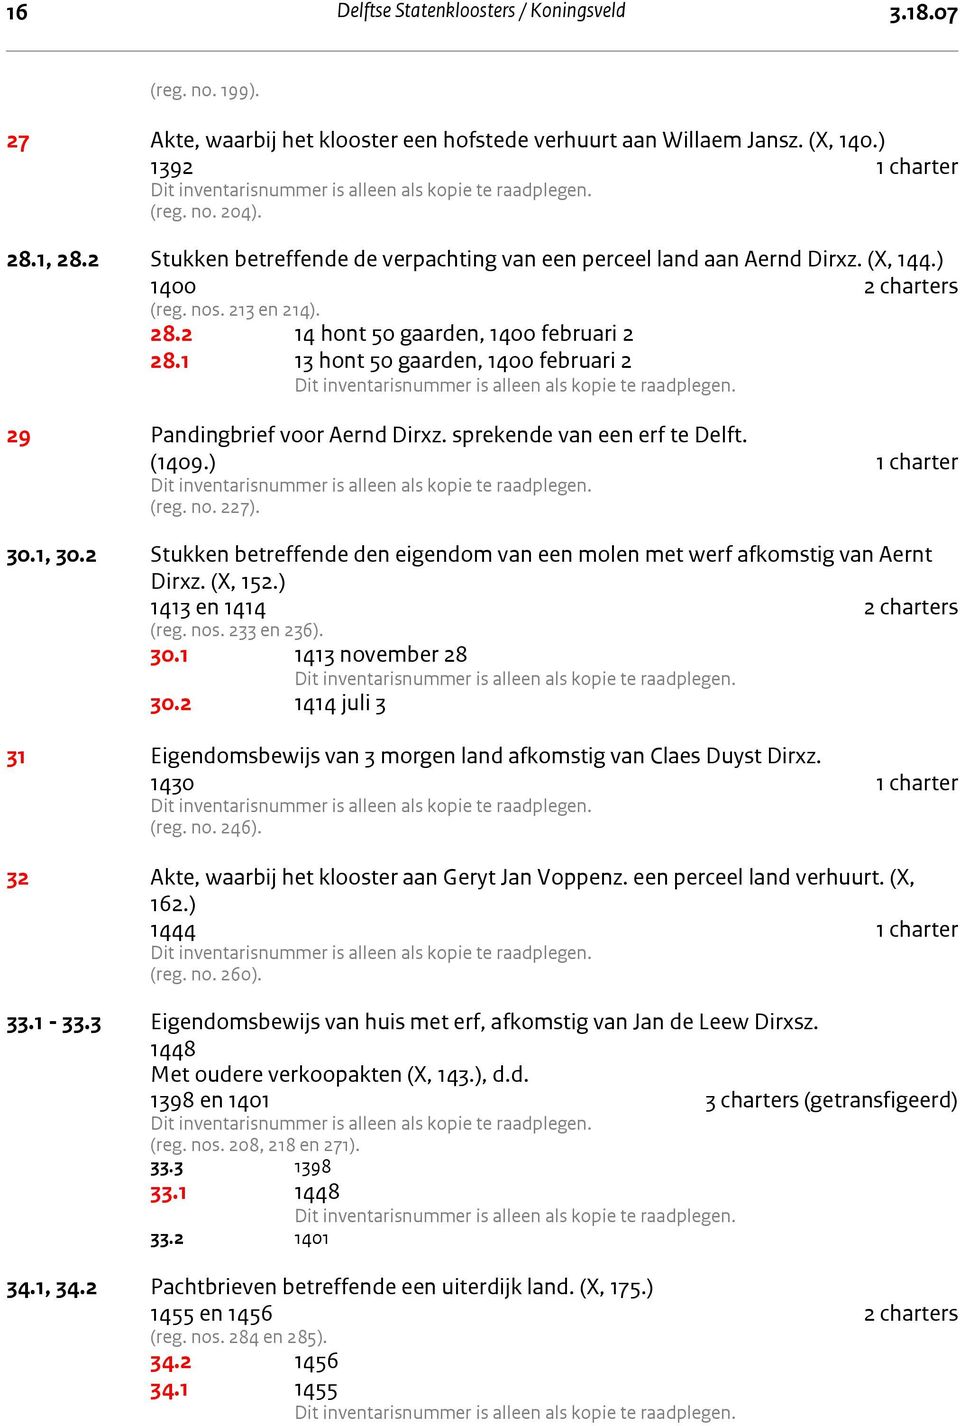 1 13 hont 50 gaarden, 1400 februari 2 29 Pandingbrief voor Aernd Dirxz. sprekende van een erf te Delft. (1409.) 1 charter (reg. no. 227). 30.1, 30.